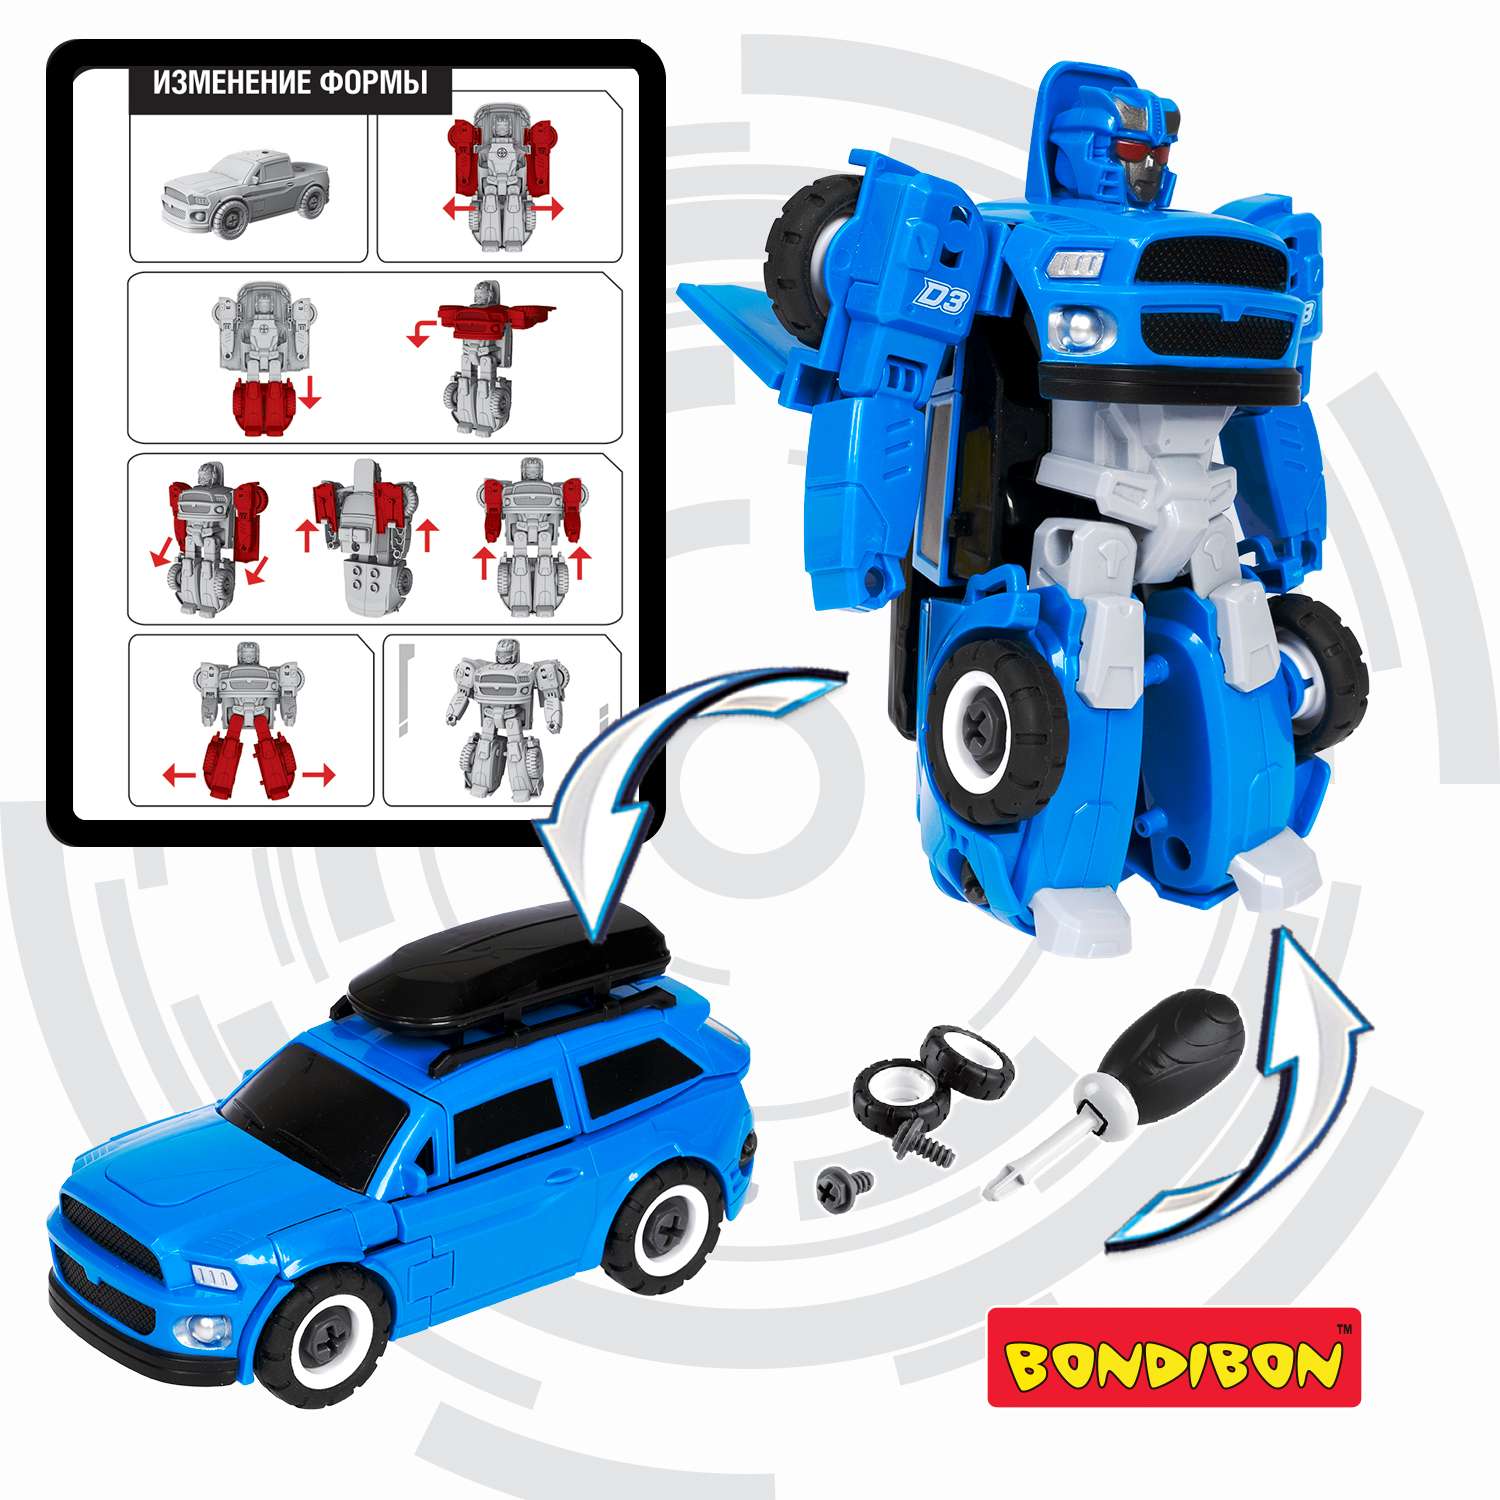 Трансформер BONDIBON Bondibot Робот-автомобиль с отвёрткой 2 в 1 джип синего цвета - фото 6